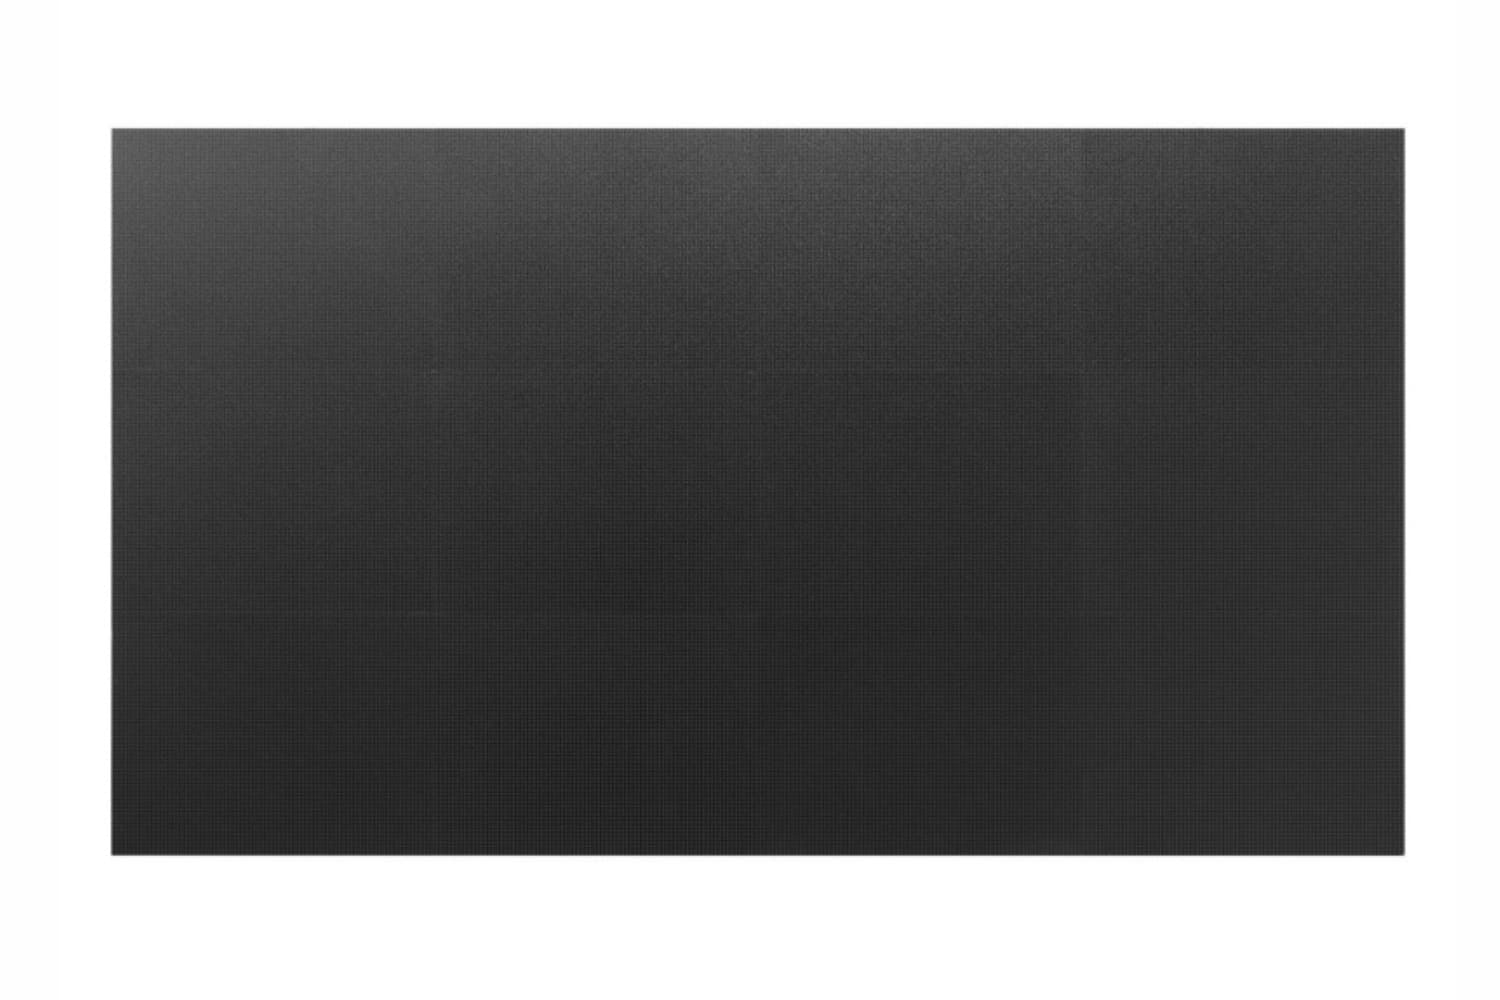  Фото светодиодный экран 0.9мм eliteboard dcmu1009 - фото 2